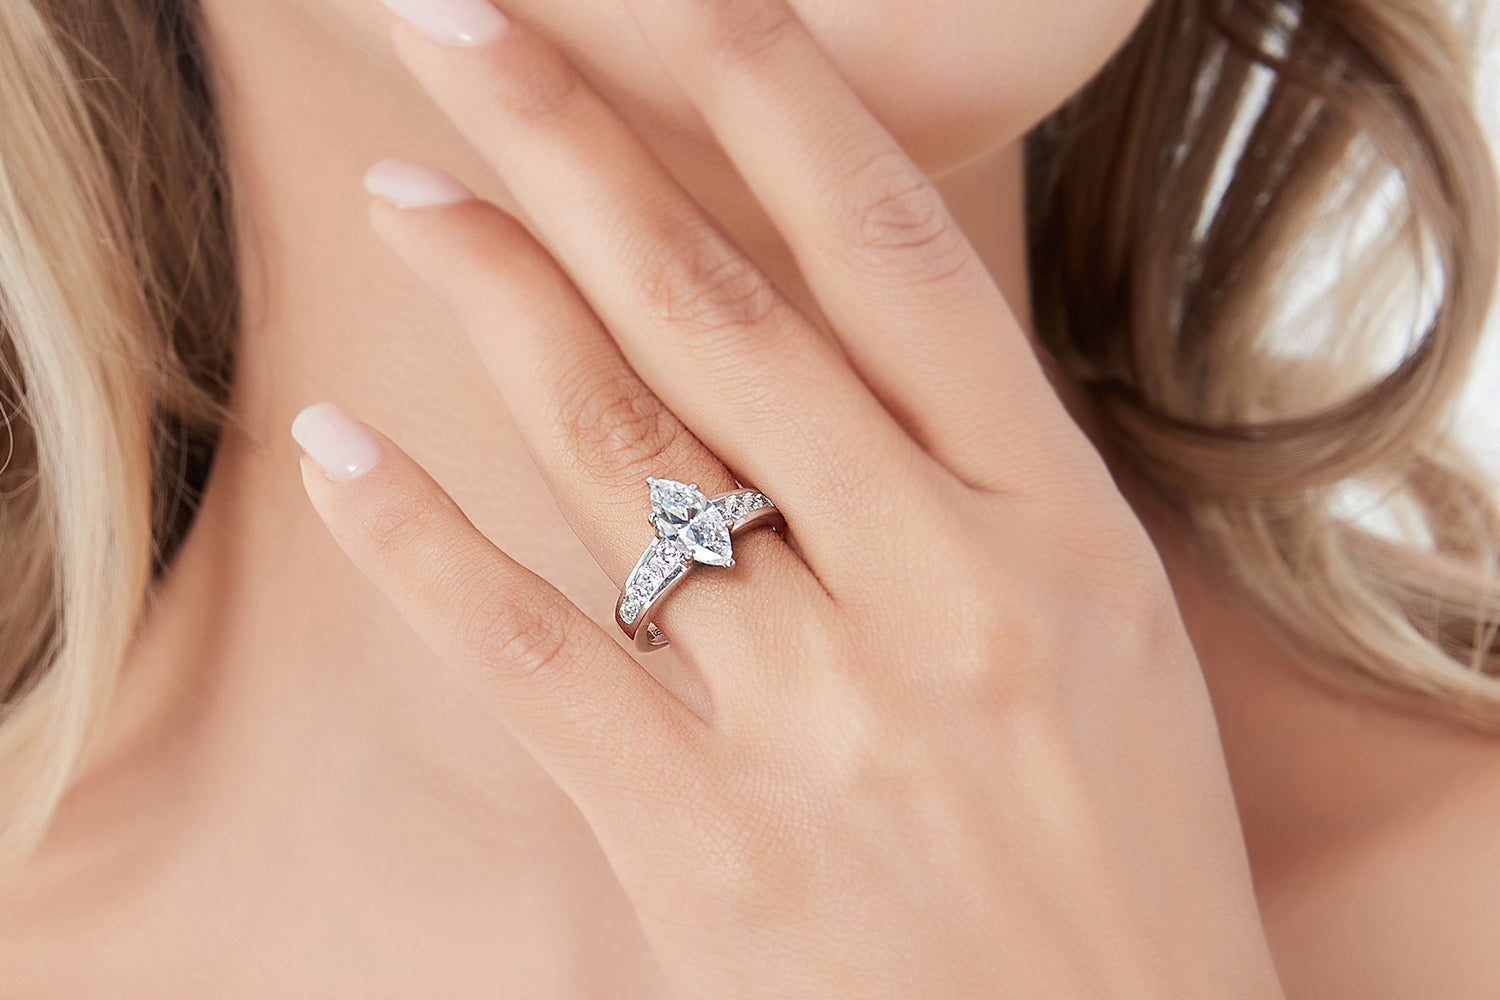 10. Glamorous Marquise Engagement Ring